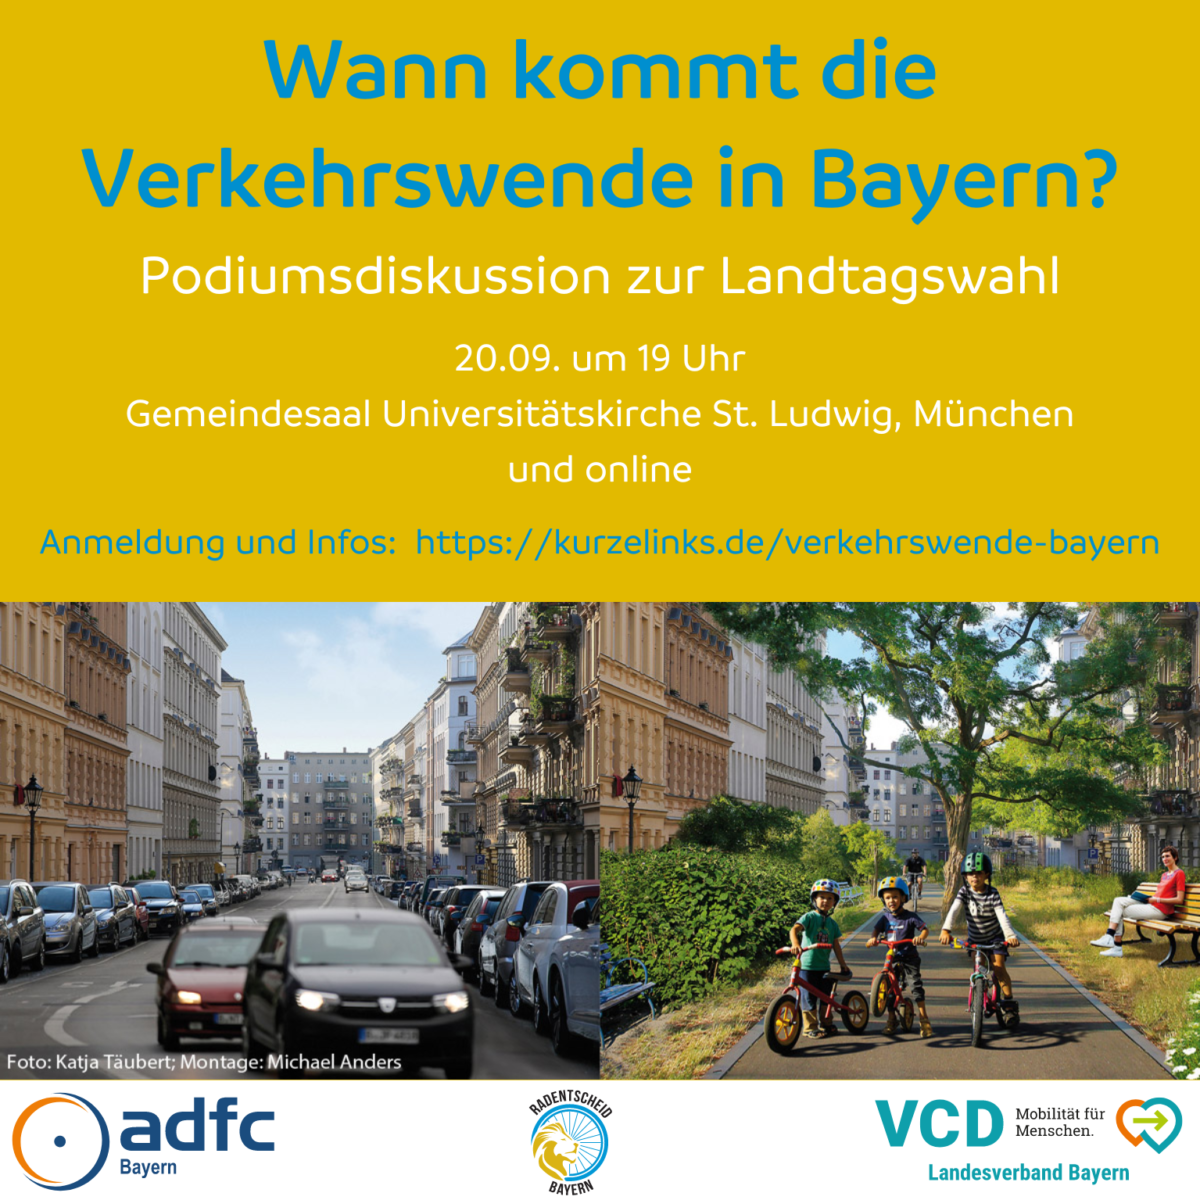 Podiumsdiskussion zur Landtagswahl "Wann kommt die Verkehrswende in Bayern?" am 20.09. um 19h im Gemeindesaal St. Ludwig in München und online.